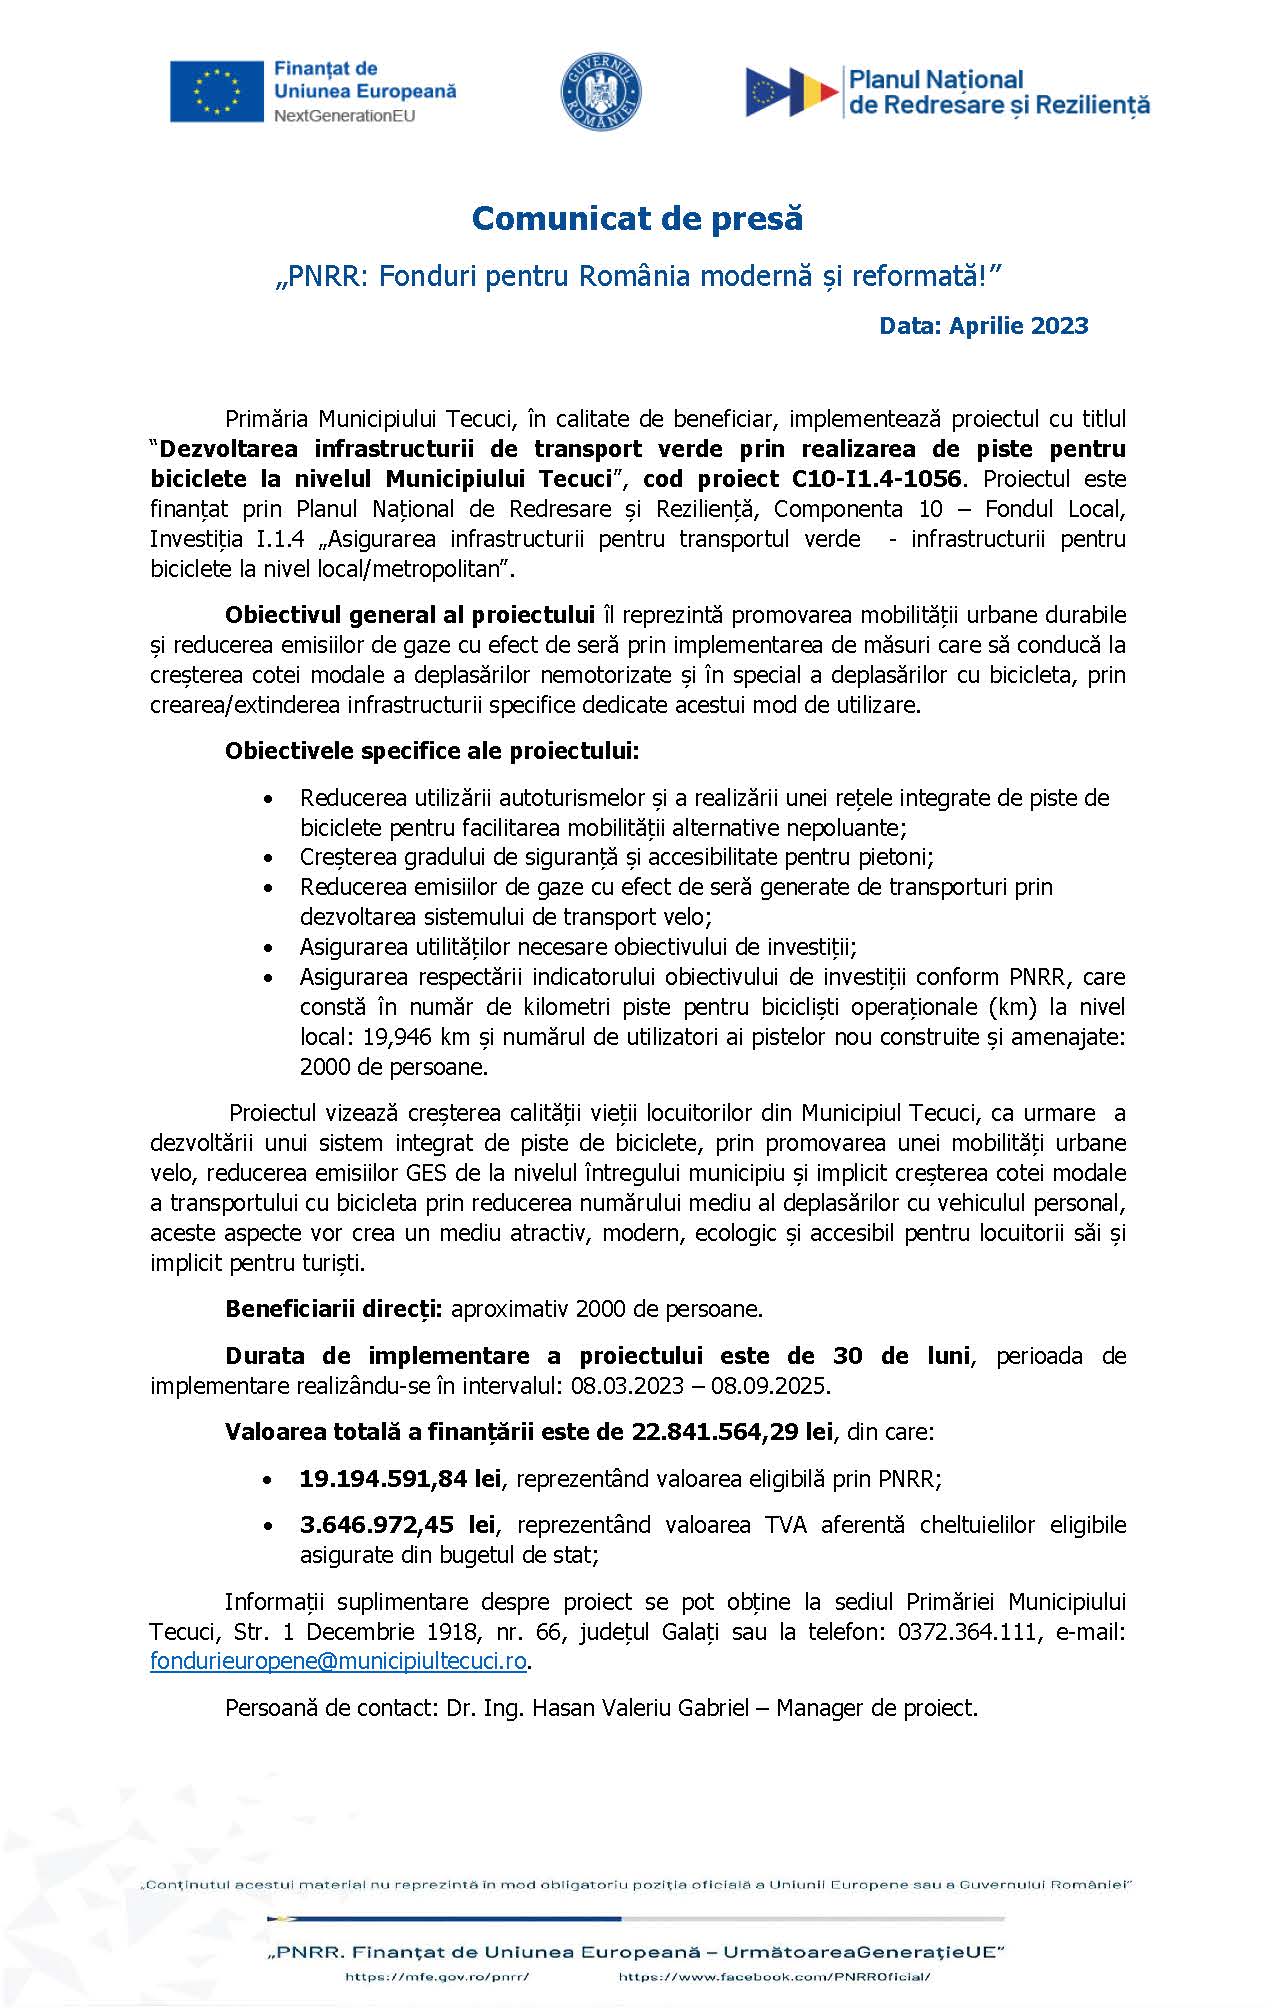 Comunicat de presă „PNRR: Fonduri pentru România modernă și reformată!” Data: Aprilie 2023